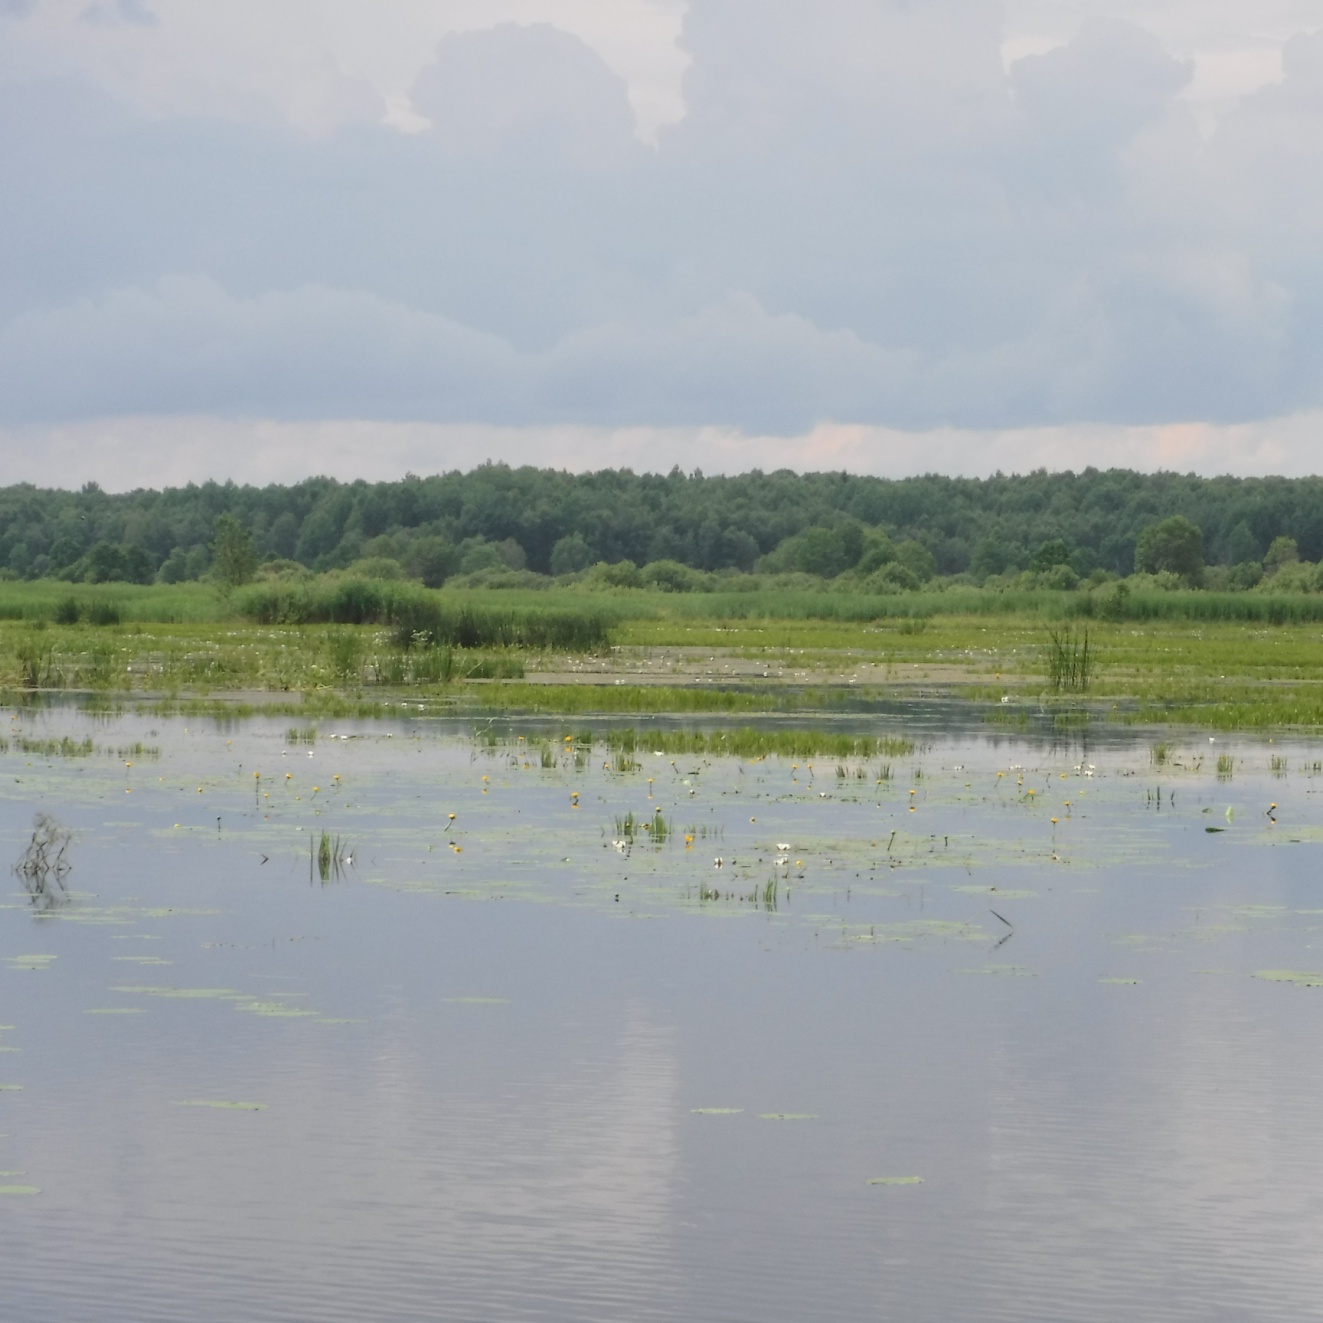  Озеро Фоминское почти сплошь заросло водной растительностью